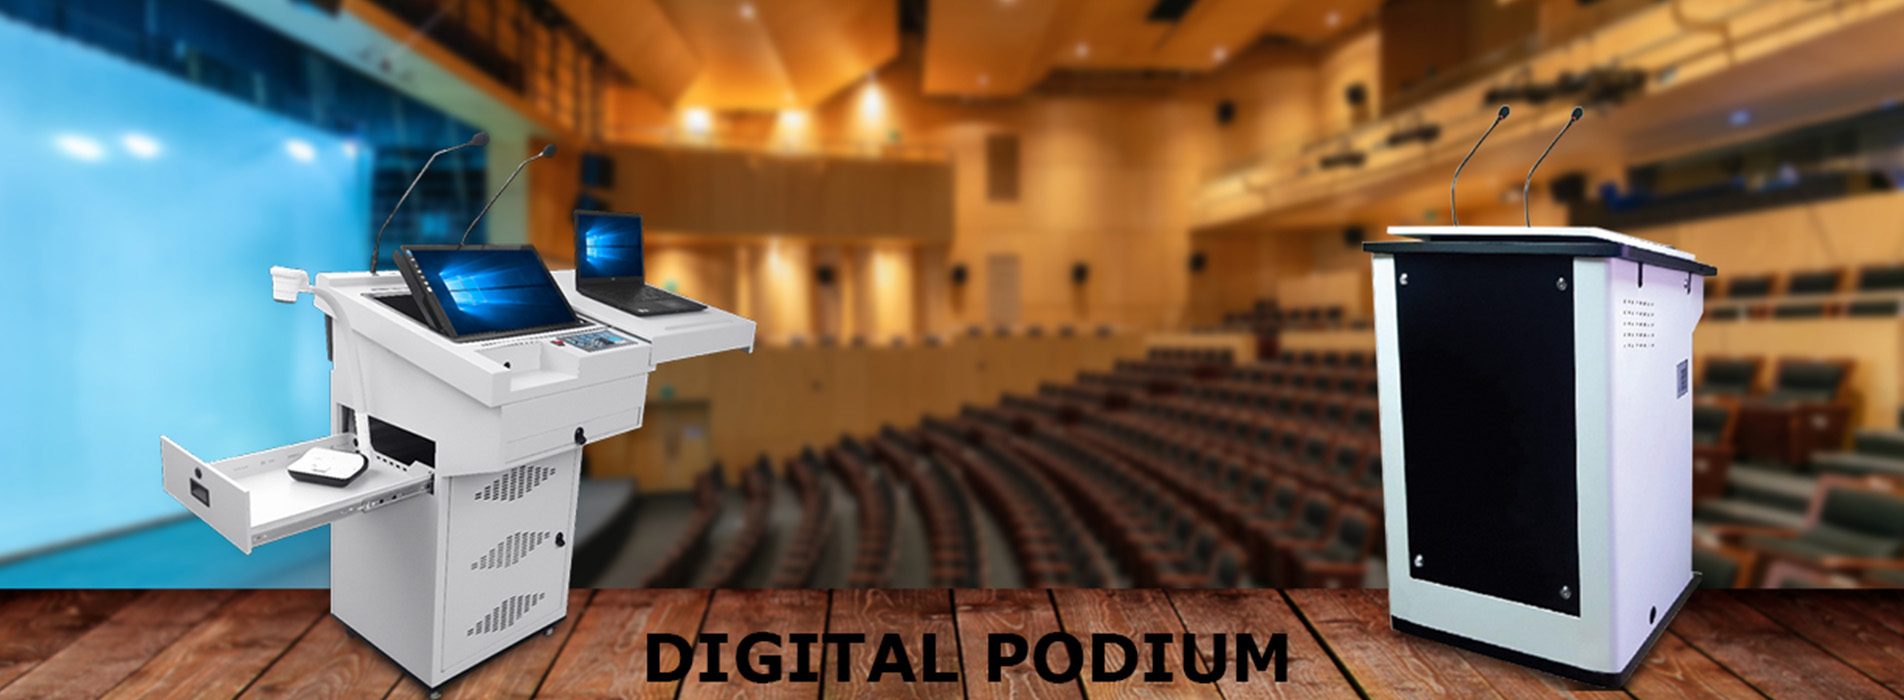 Digital Podium Manufacturers In India